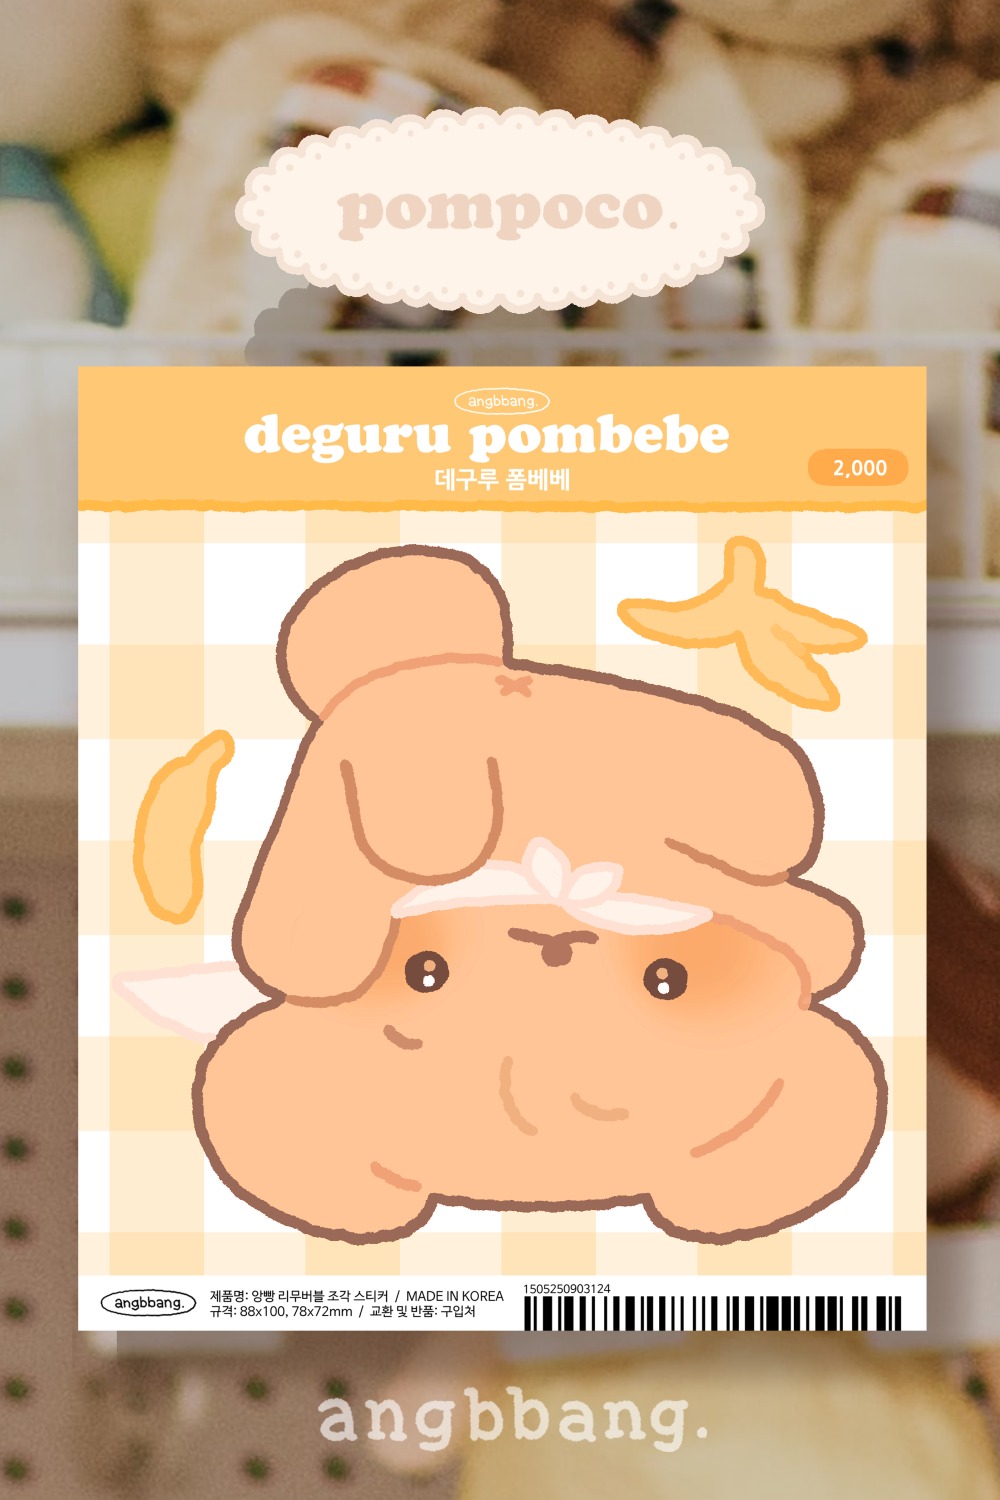 데구루 폼베베 ㅣ deguru pombebe